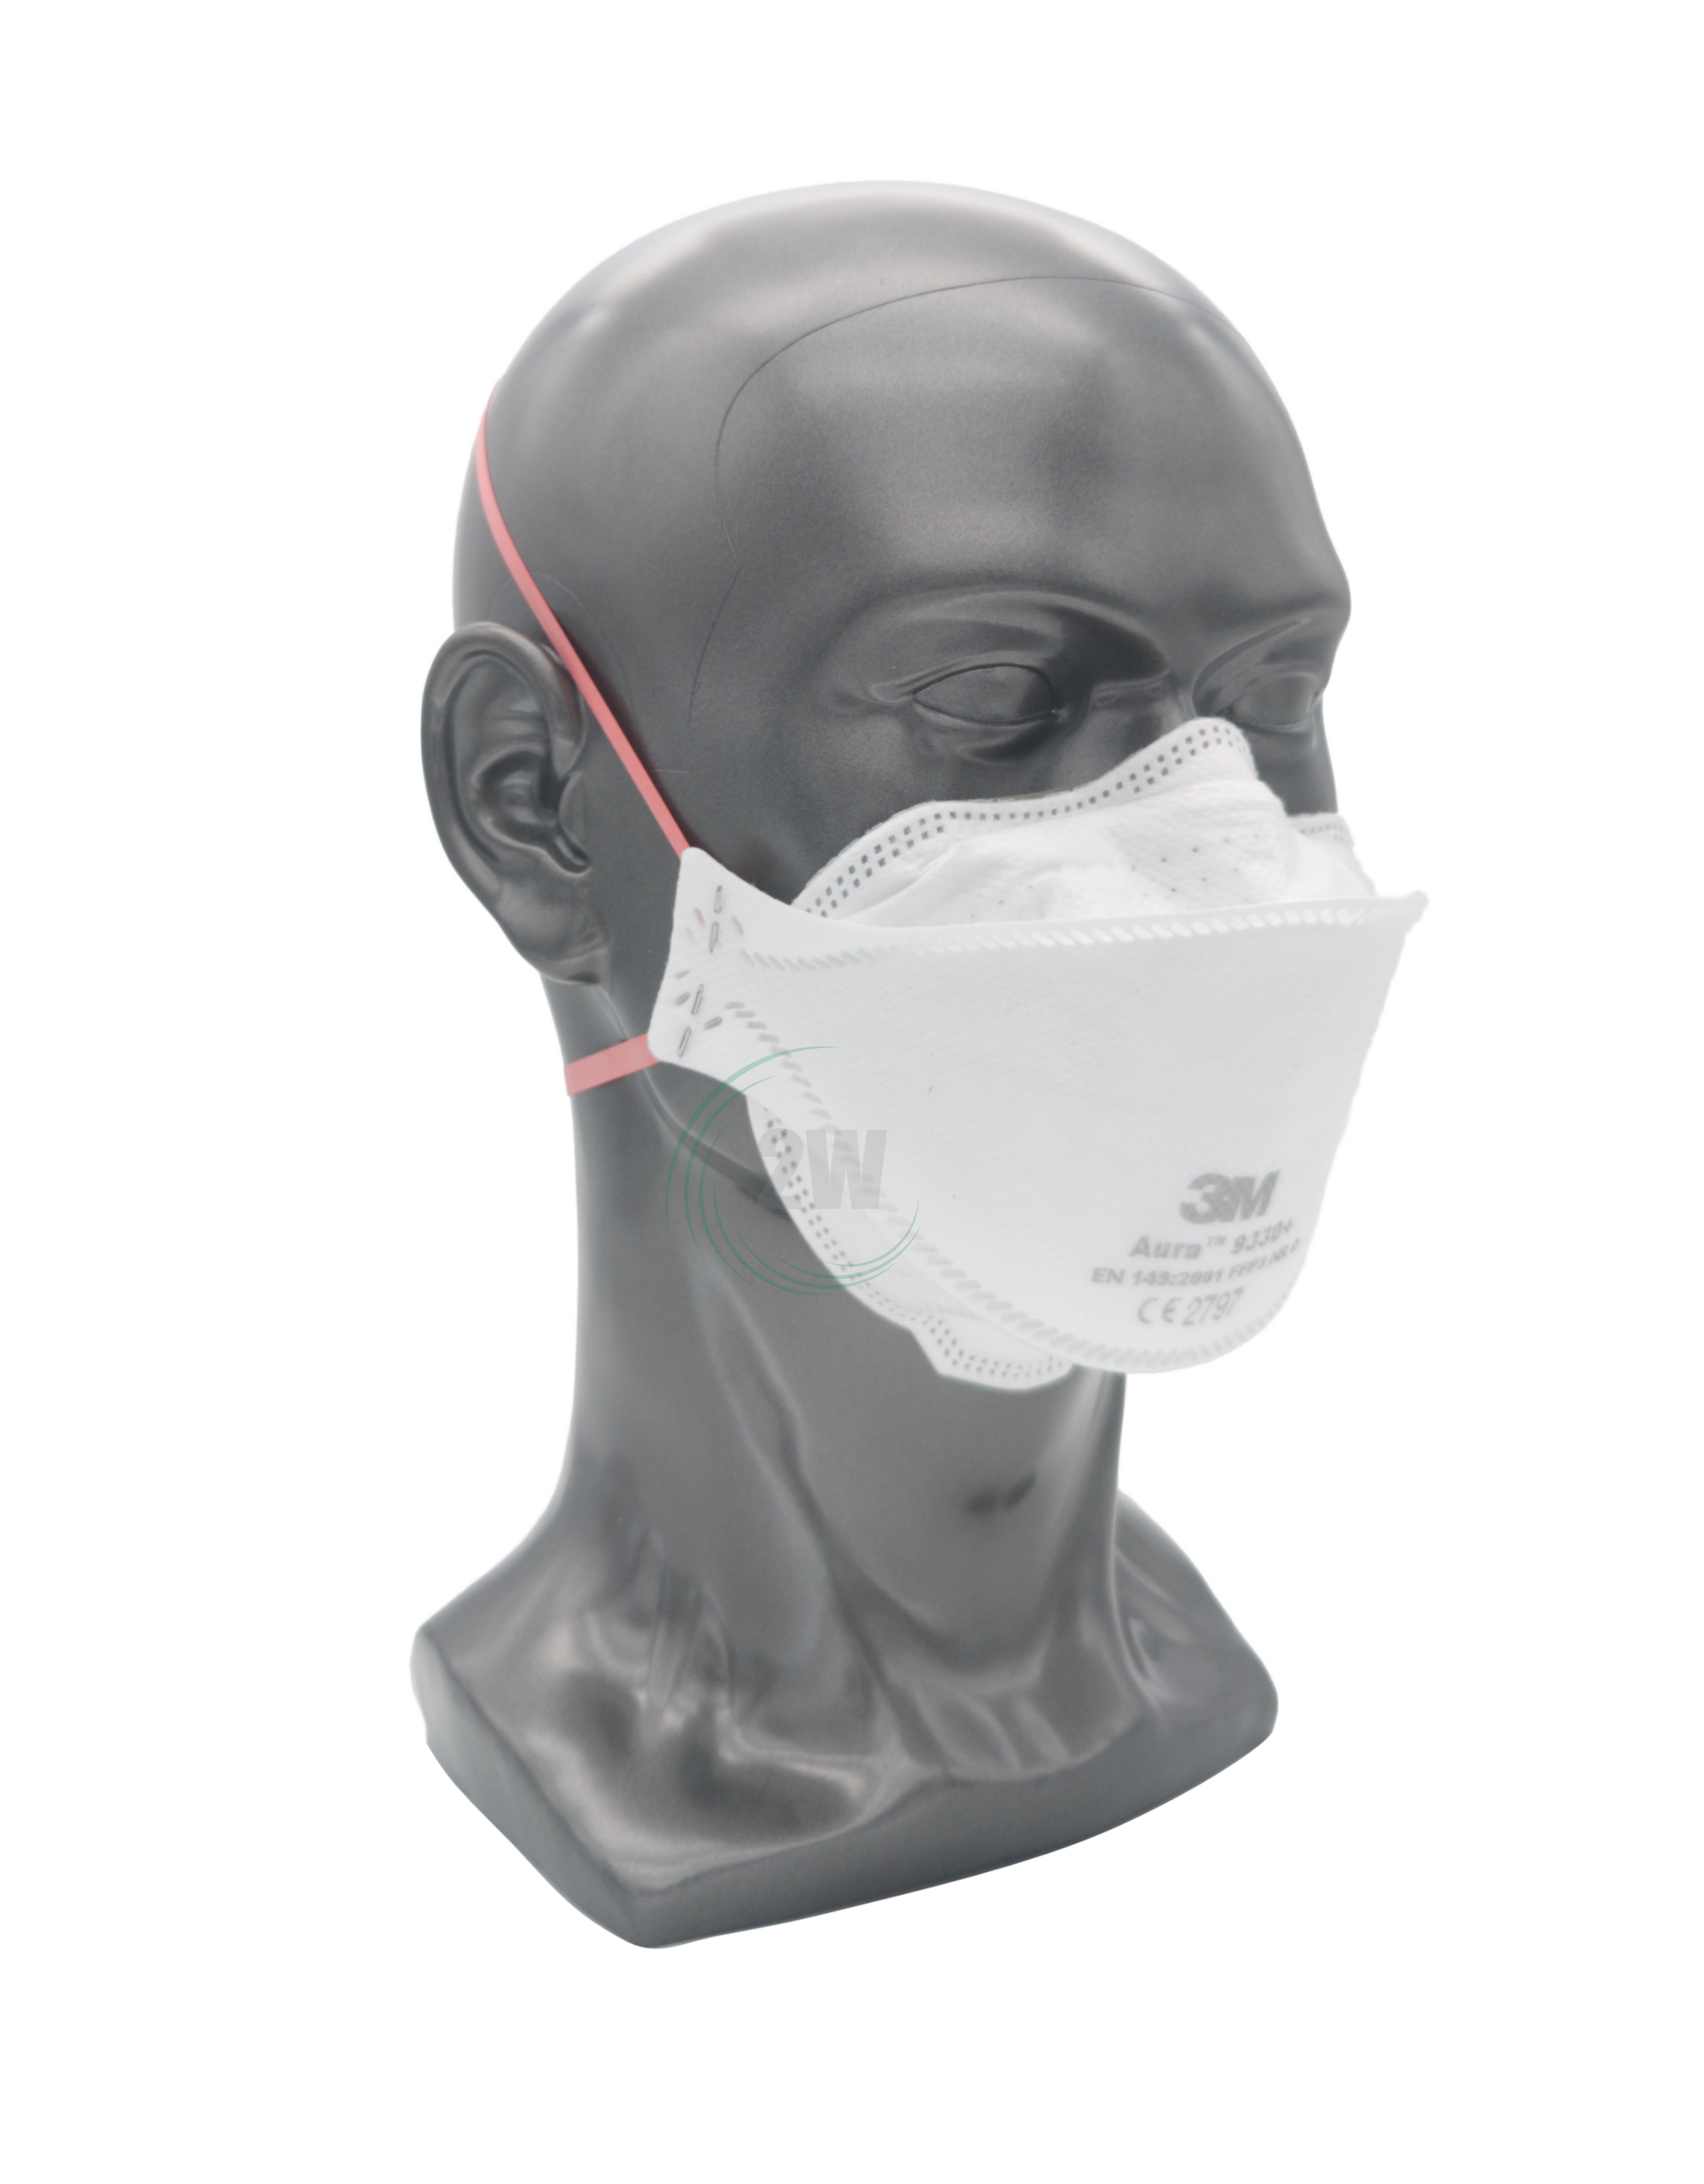 3M Aura Atemschutzmaske ohne Ventil 9330+ FFP3 NR D (20 Stk.)